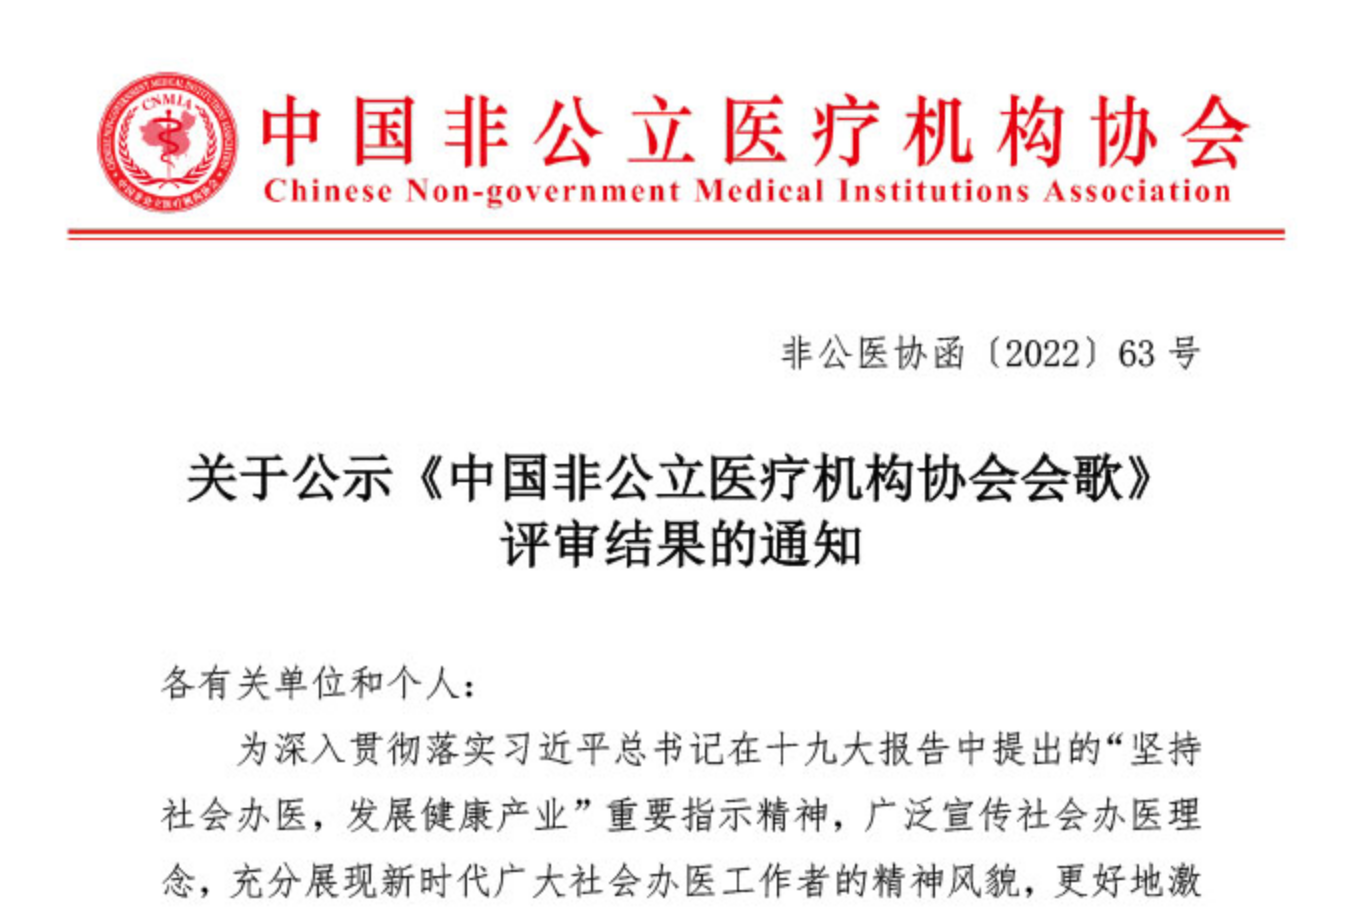 关于公示《中国非公立医疗机构协会会歌》评审结果的通知